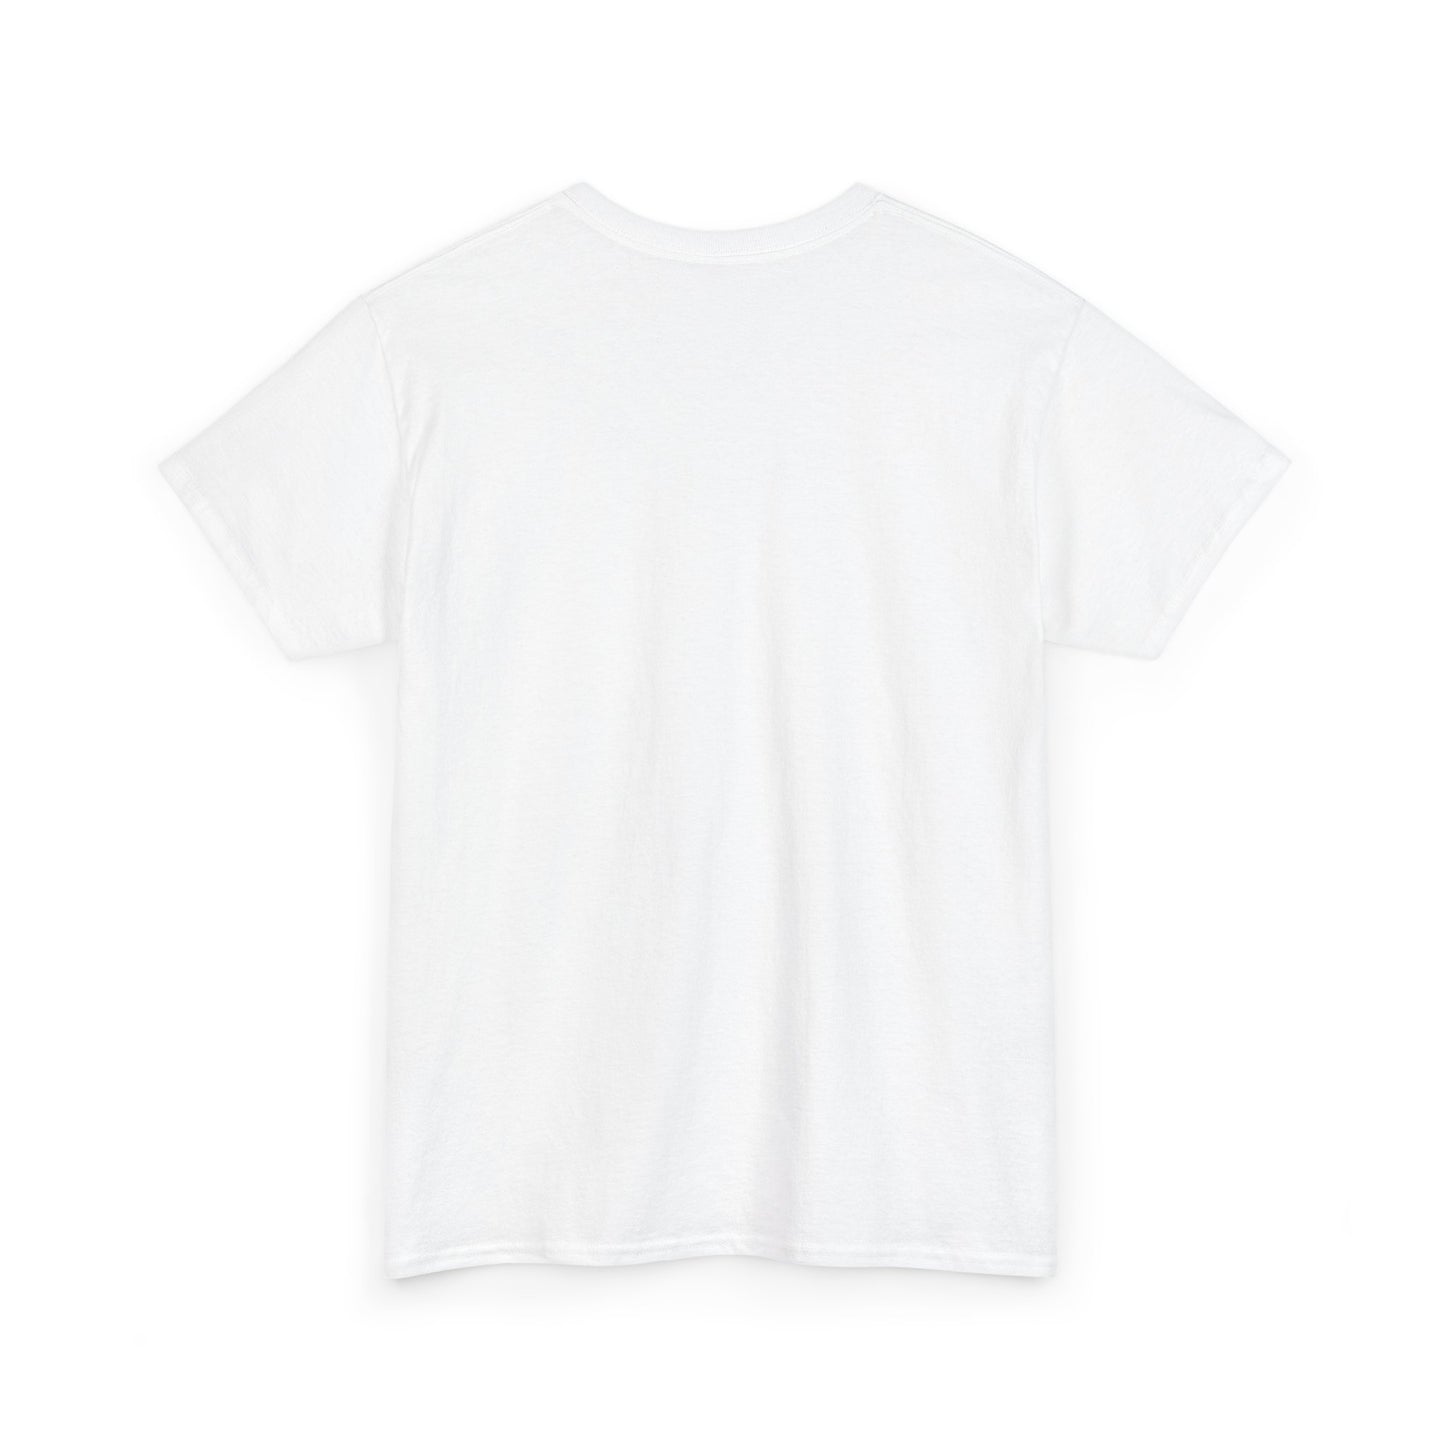 Unisex Heavy Cotton Graphic Design (Ctrl, Alt, Del) T-shirt